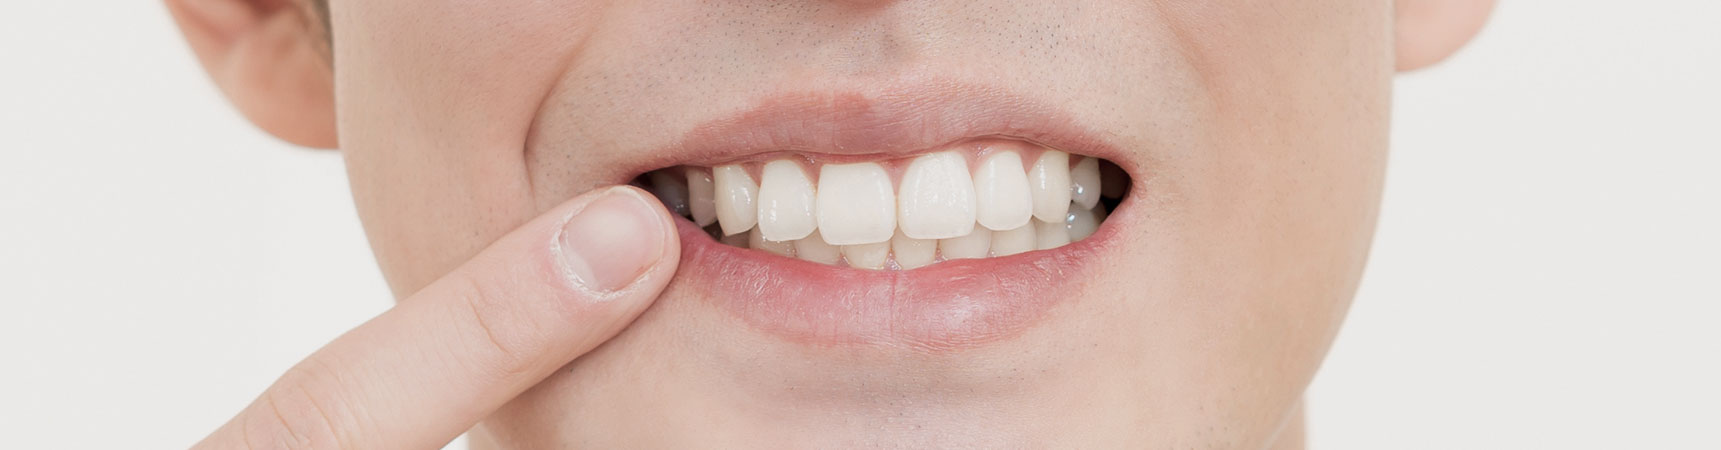 歯のホワイトニングのイメージ